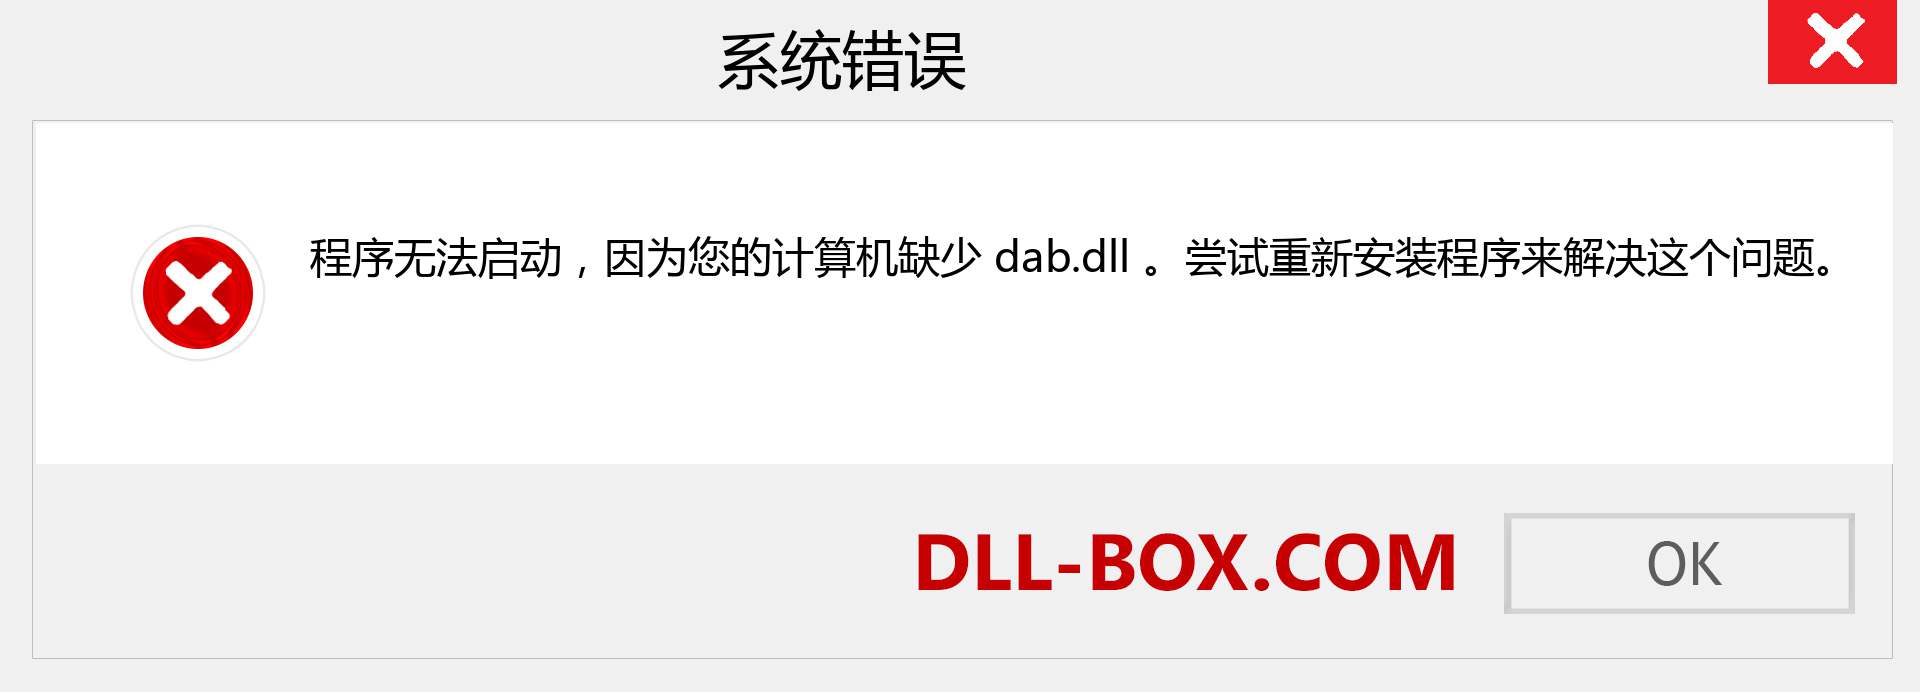 dab.dll 文件丢失？。 适用于 Windows 7、8、10 的下载 - 修复 Windows、照片、图像上的 dab dll 丢失错误